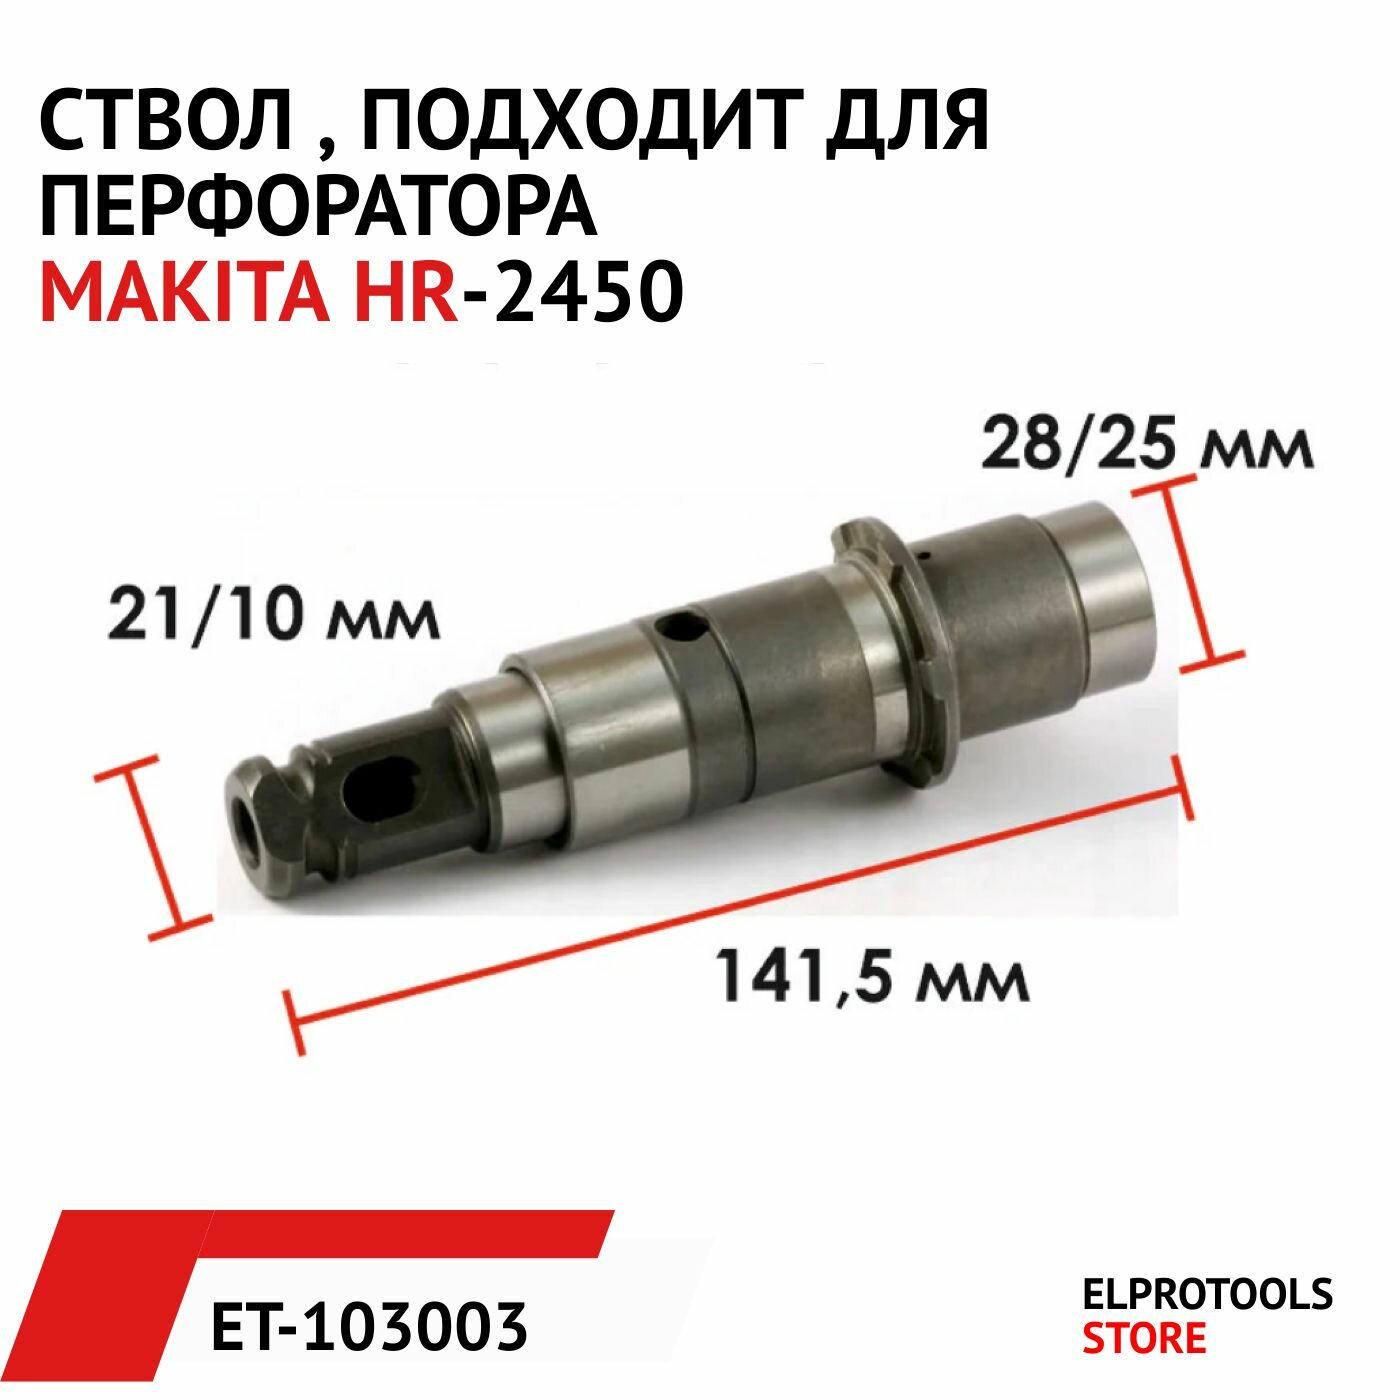 ET-103003 Ствол  подходит для перфоратора MAKITA HR-2450